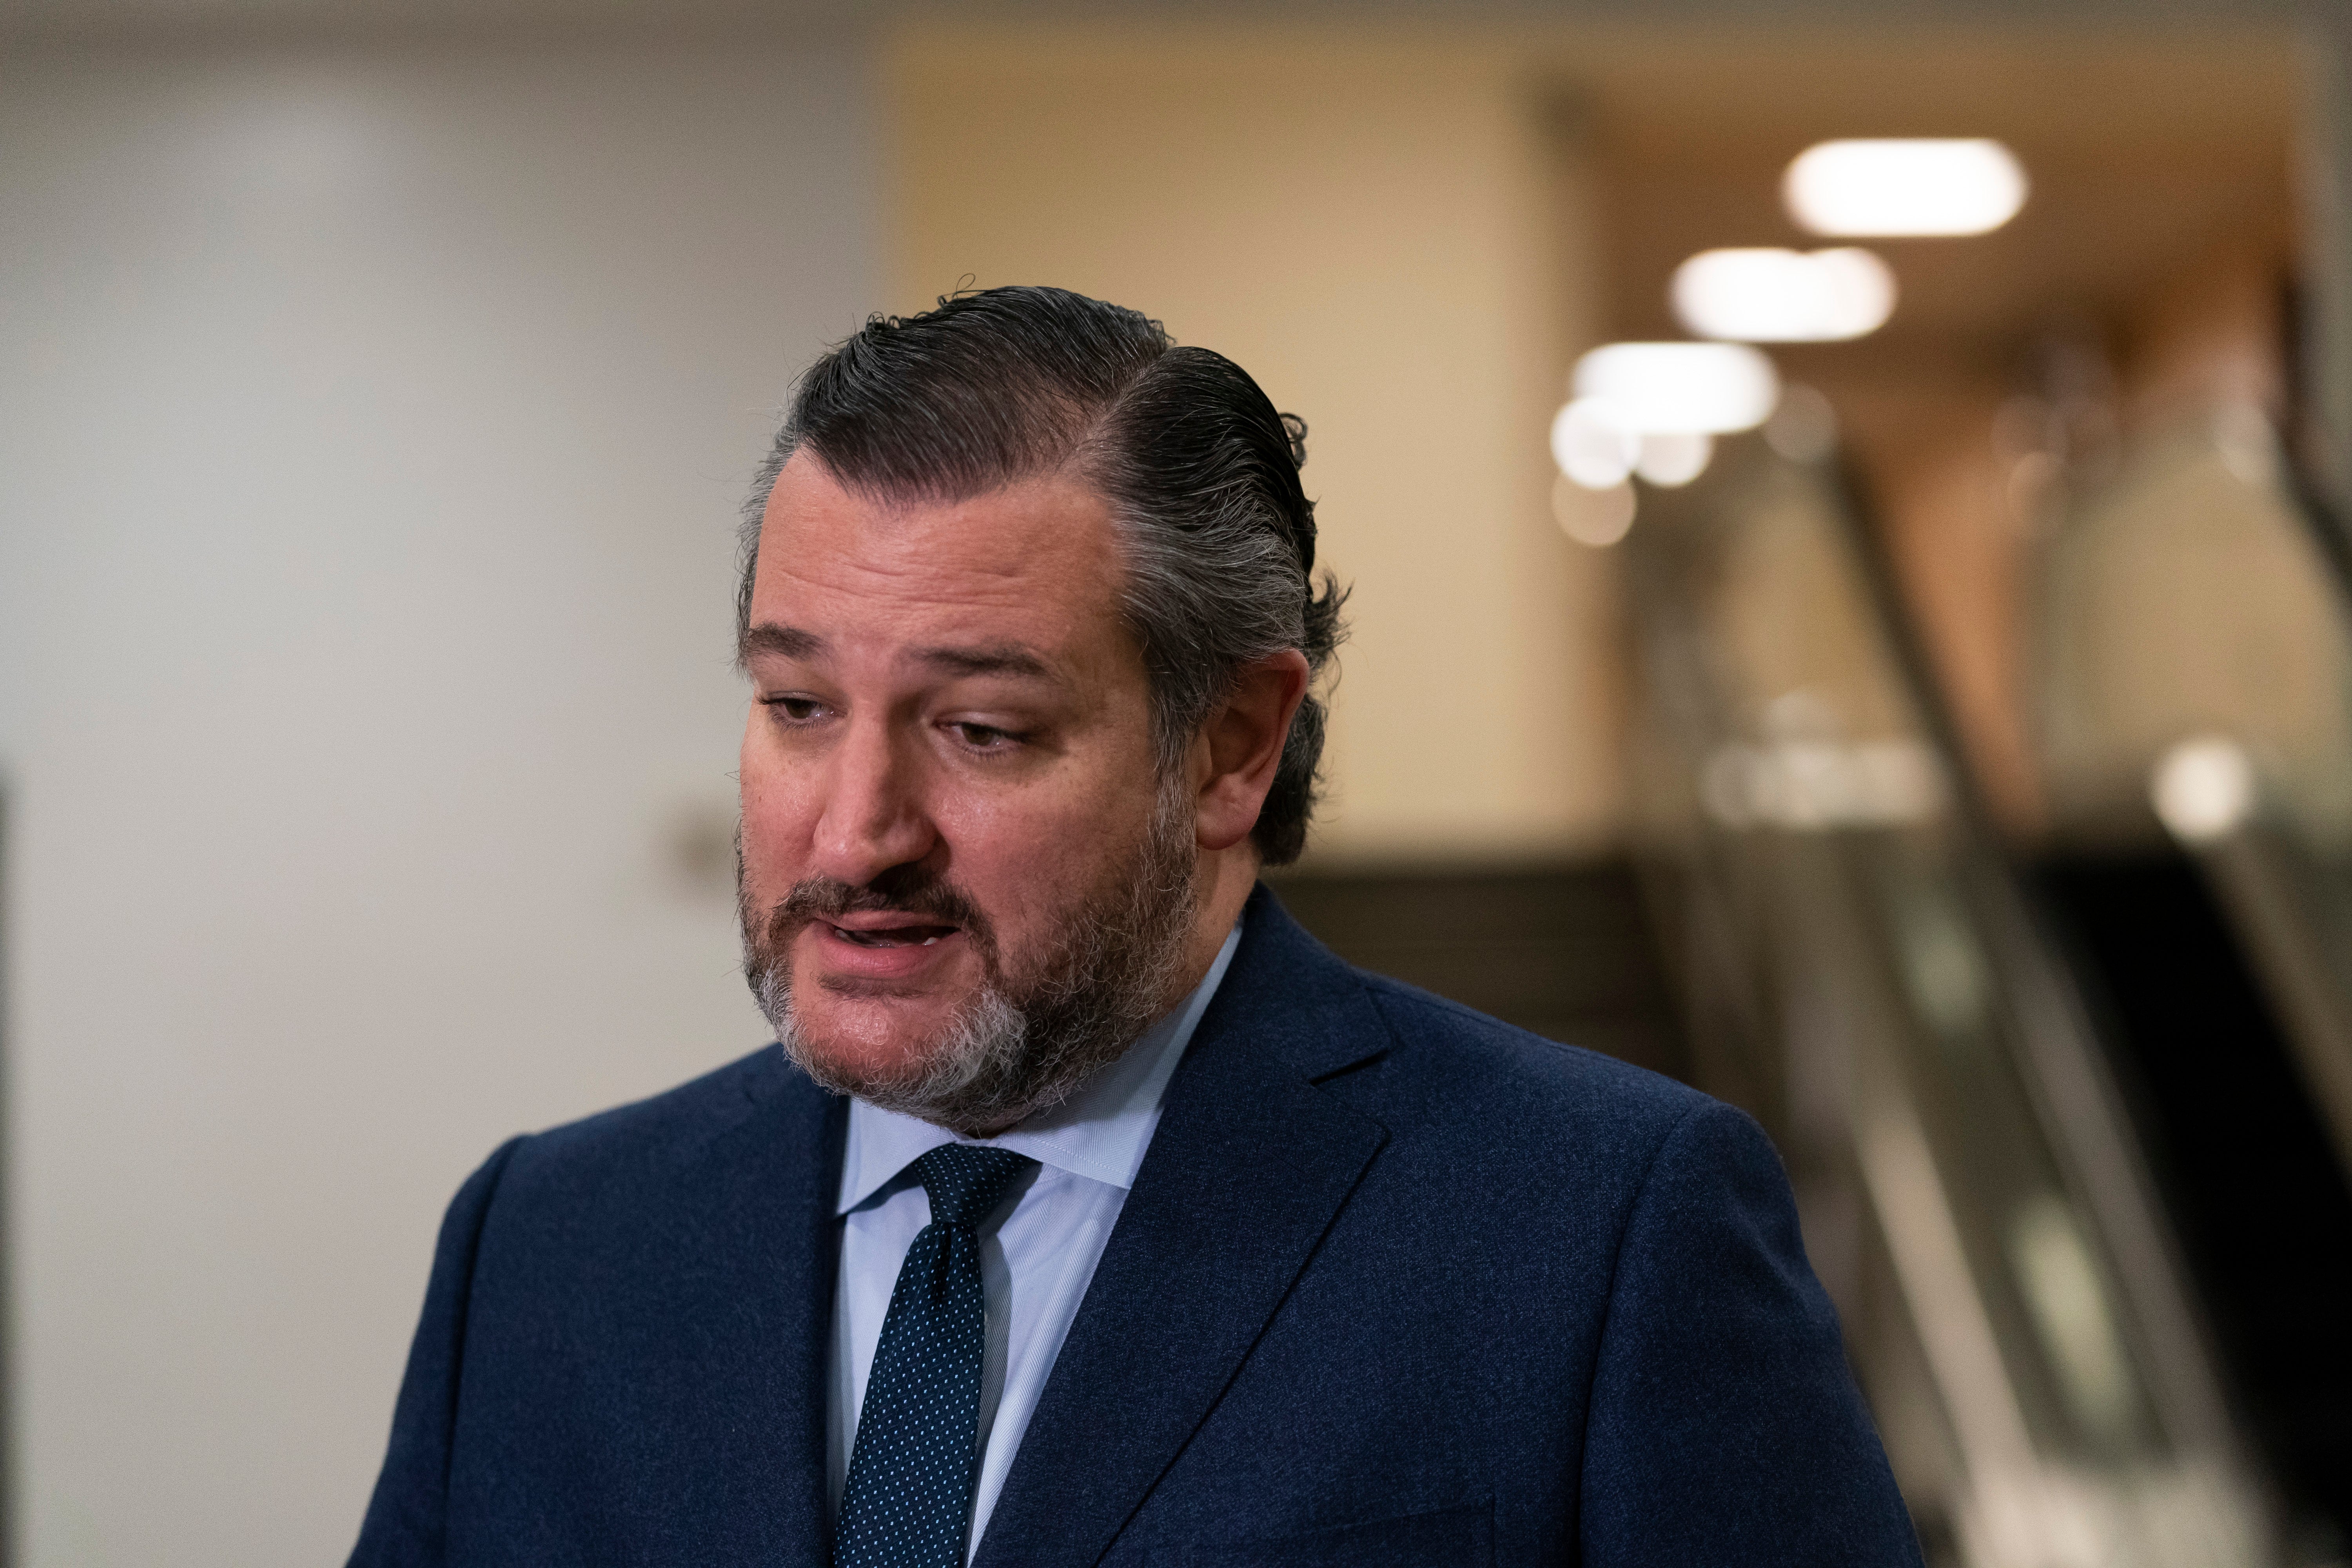 Ted Cruz calls for congressional inquiry into Cuomo nursing home scandal